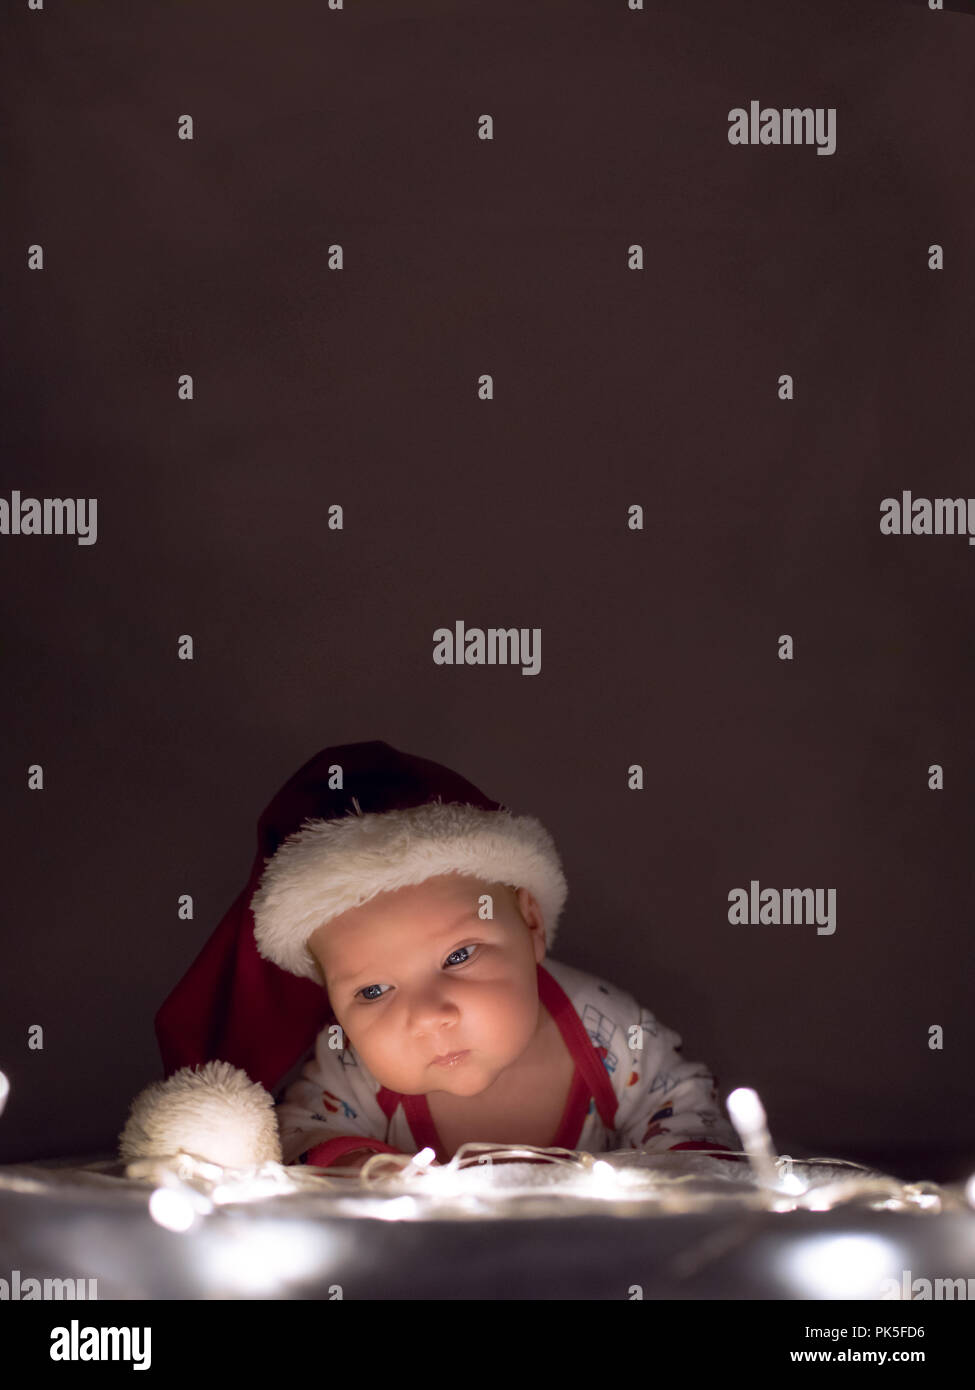 Weihnachten Poster. Neugeborenes Baby mit Weihnachtsmütze liegen auf Weihnachtsbeleuchtung. Overhead Platz für Text oder andere Elemente. Stockfoto